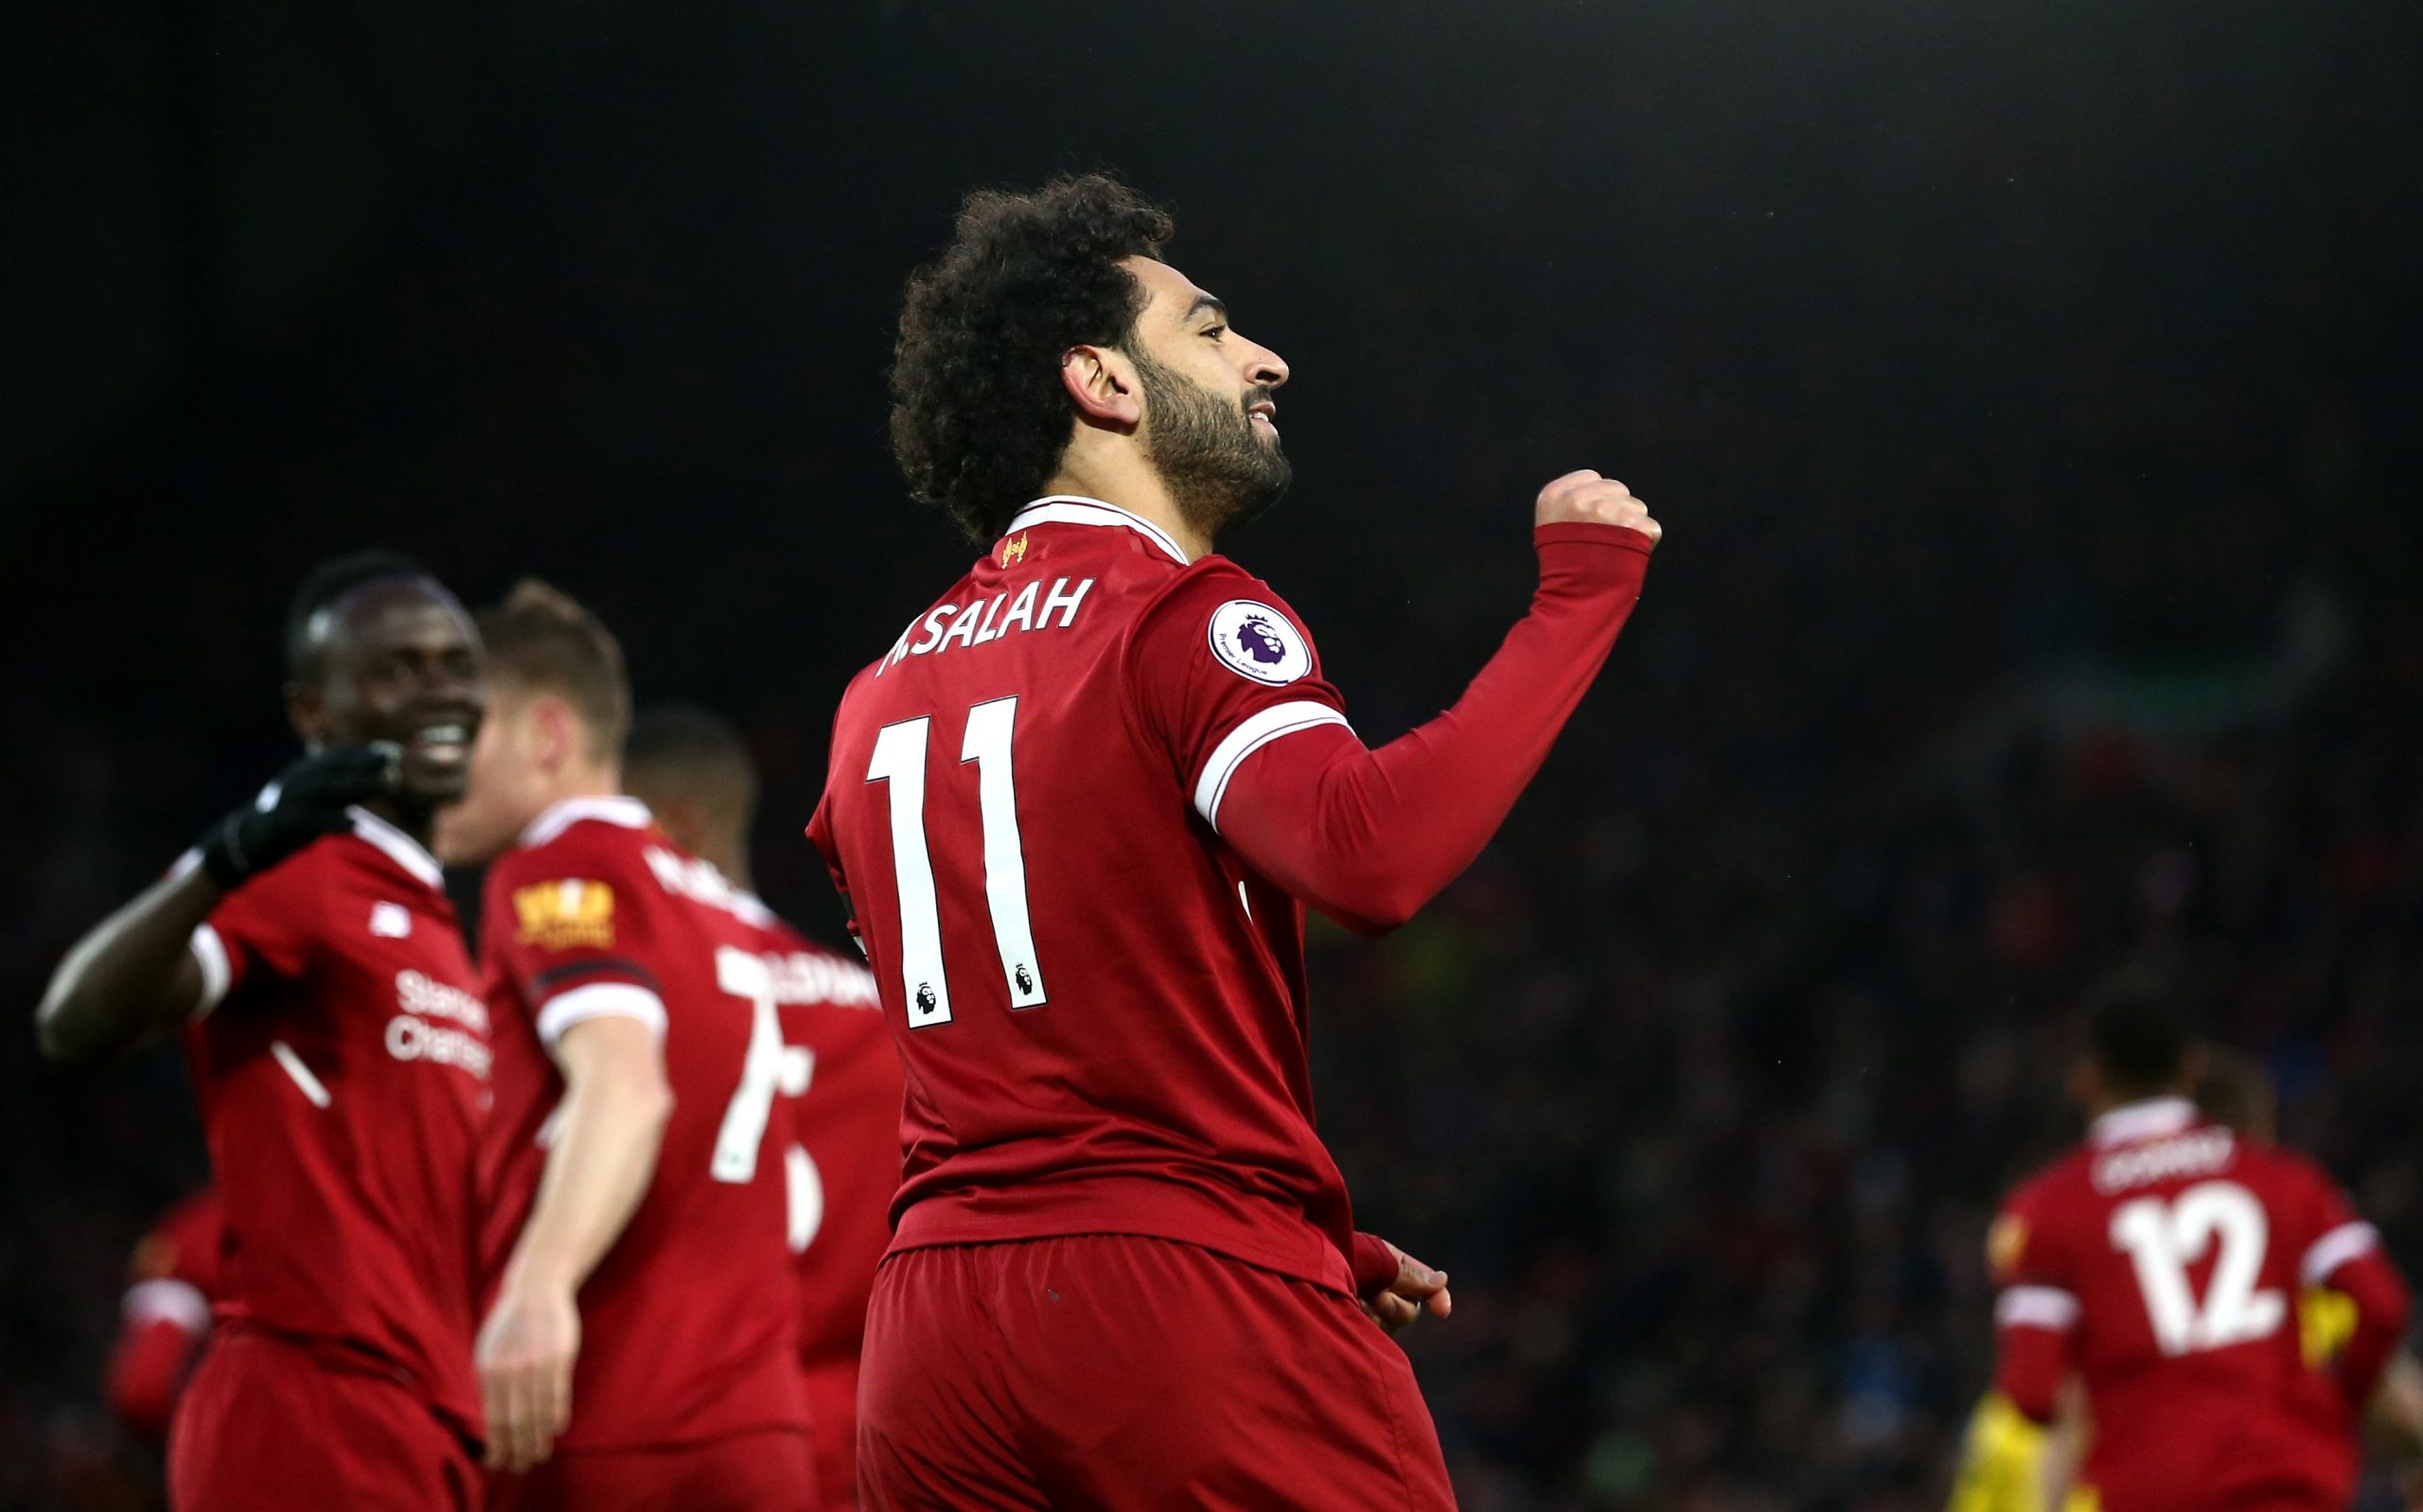 Liverpool : Les chiffres donnent le titre de meilleur en Afrique à Mo Salah  devant Sadio Mané dans cette période de Corona.